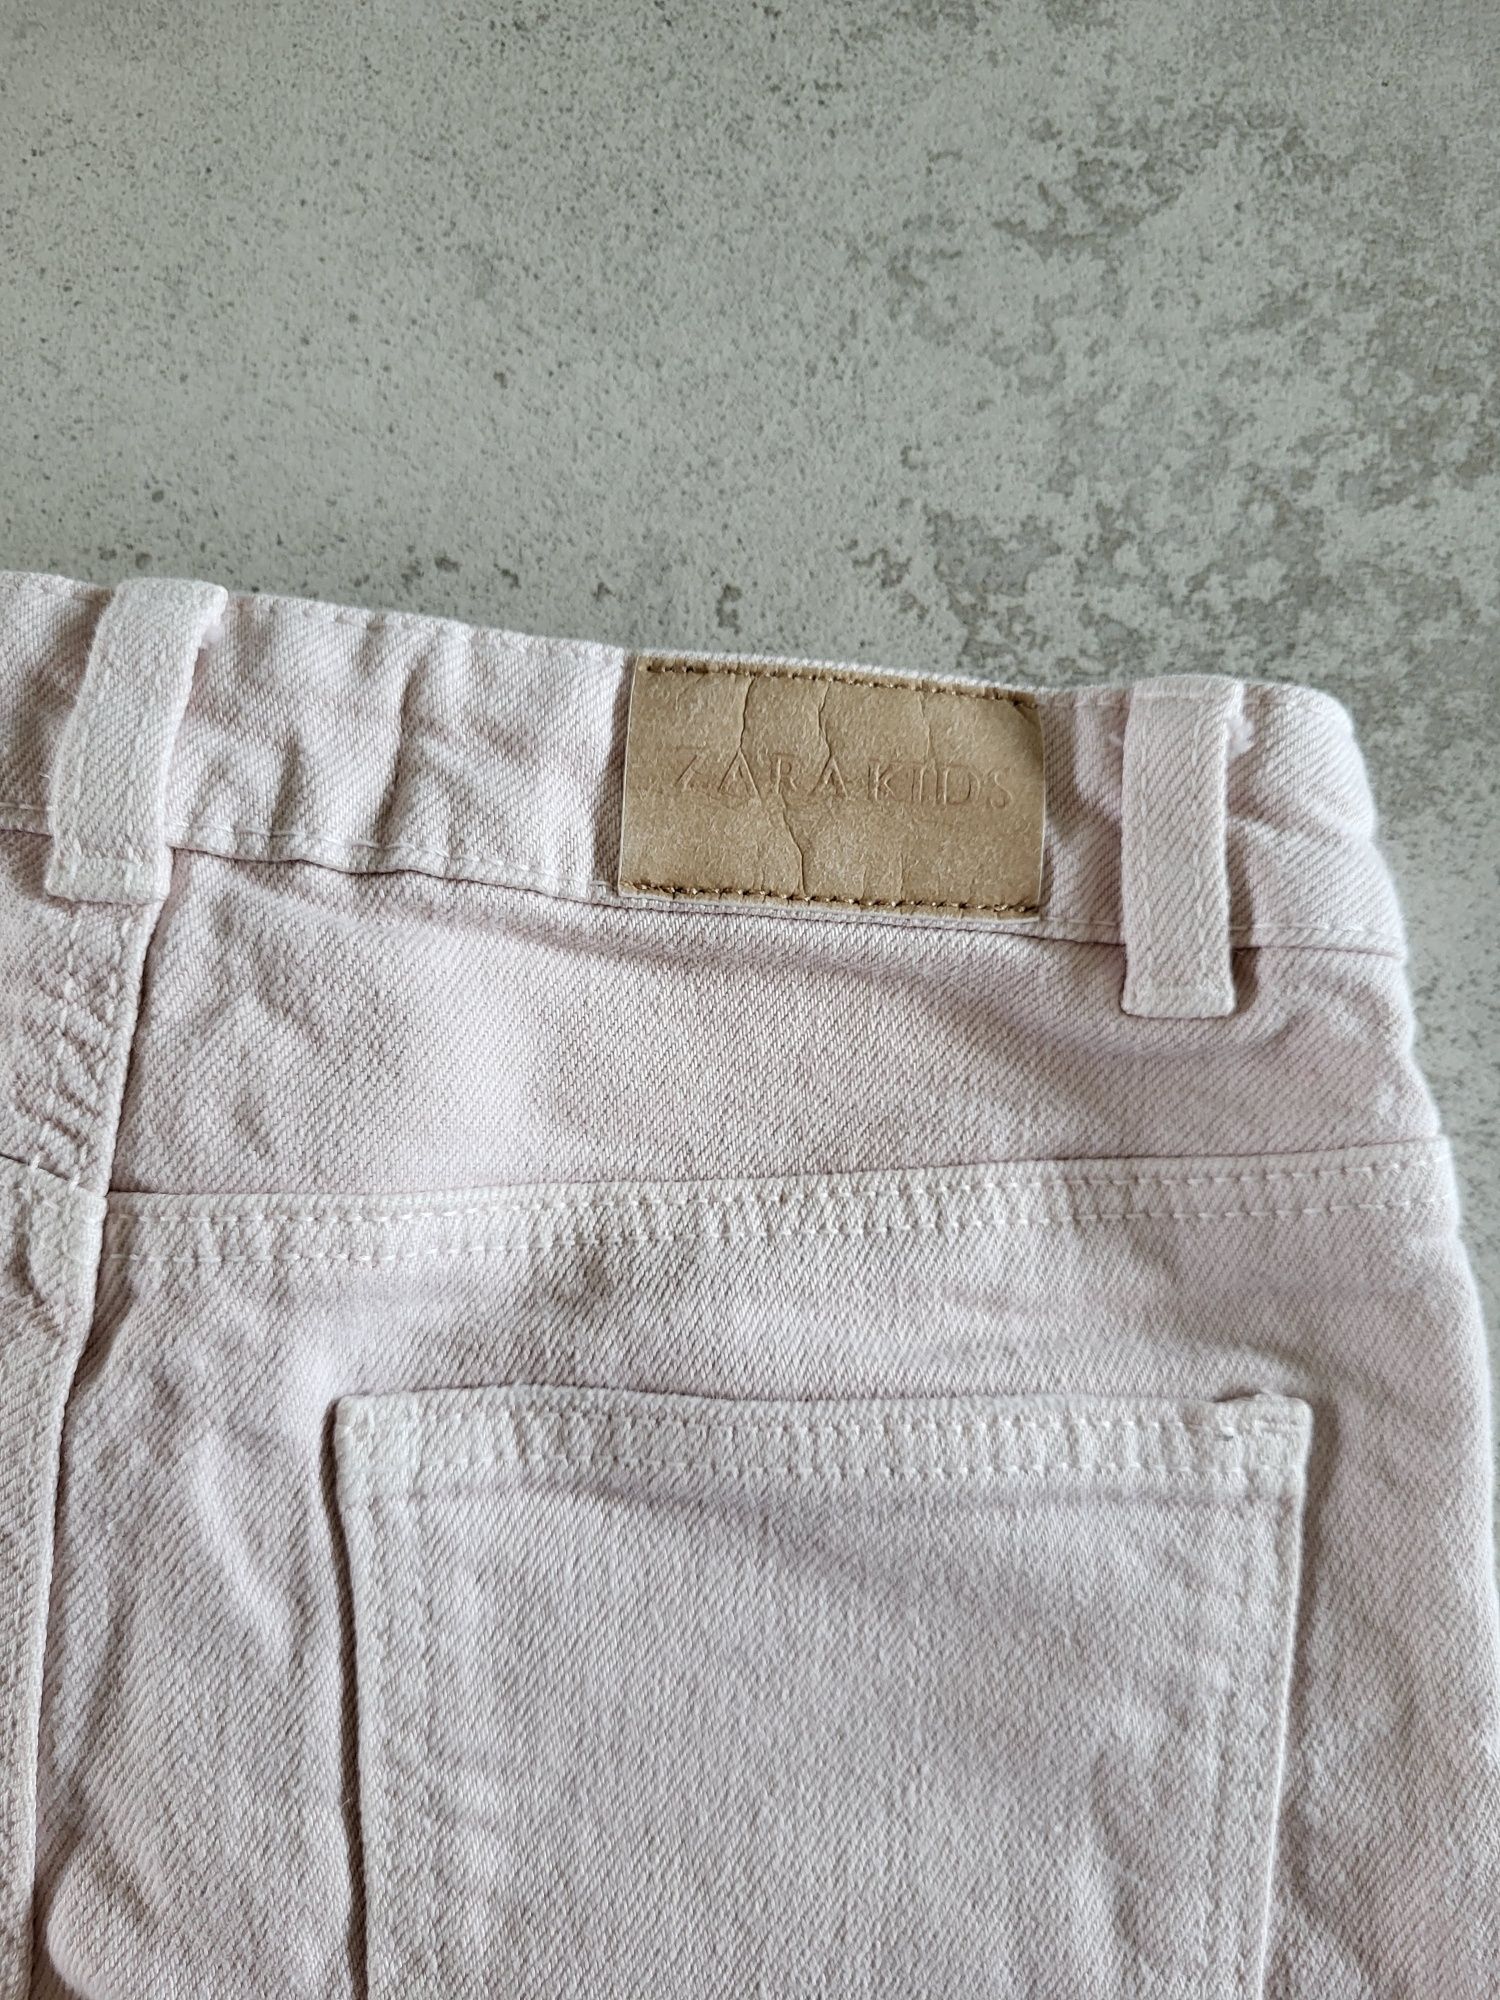 Spodenki szorty Zara 122 jeansowe jeans różowe krótkie dżinsowe